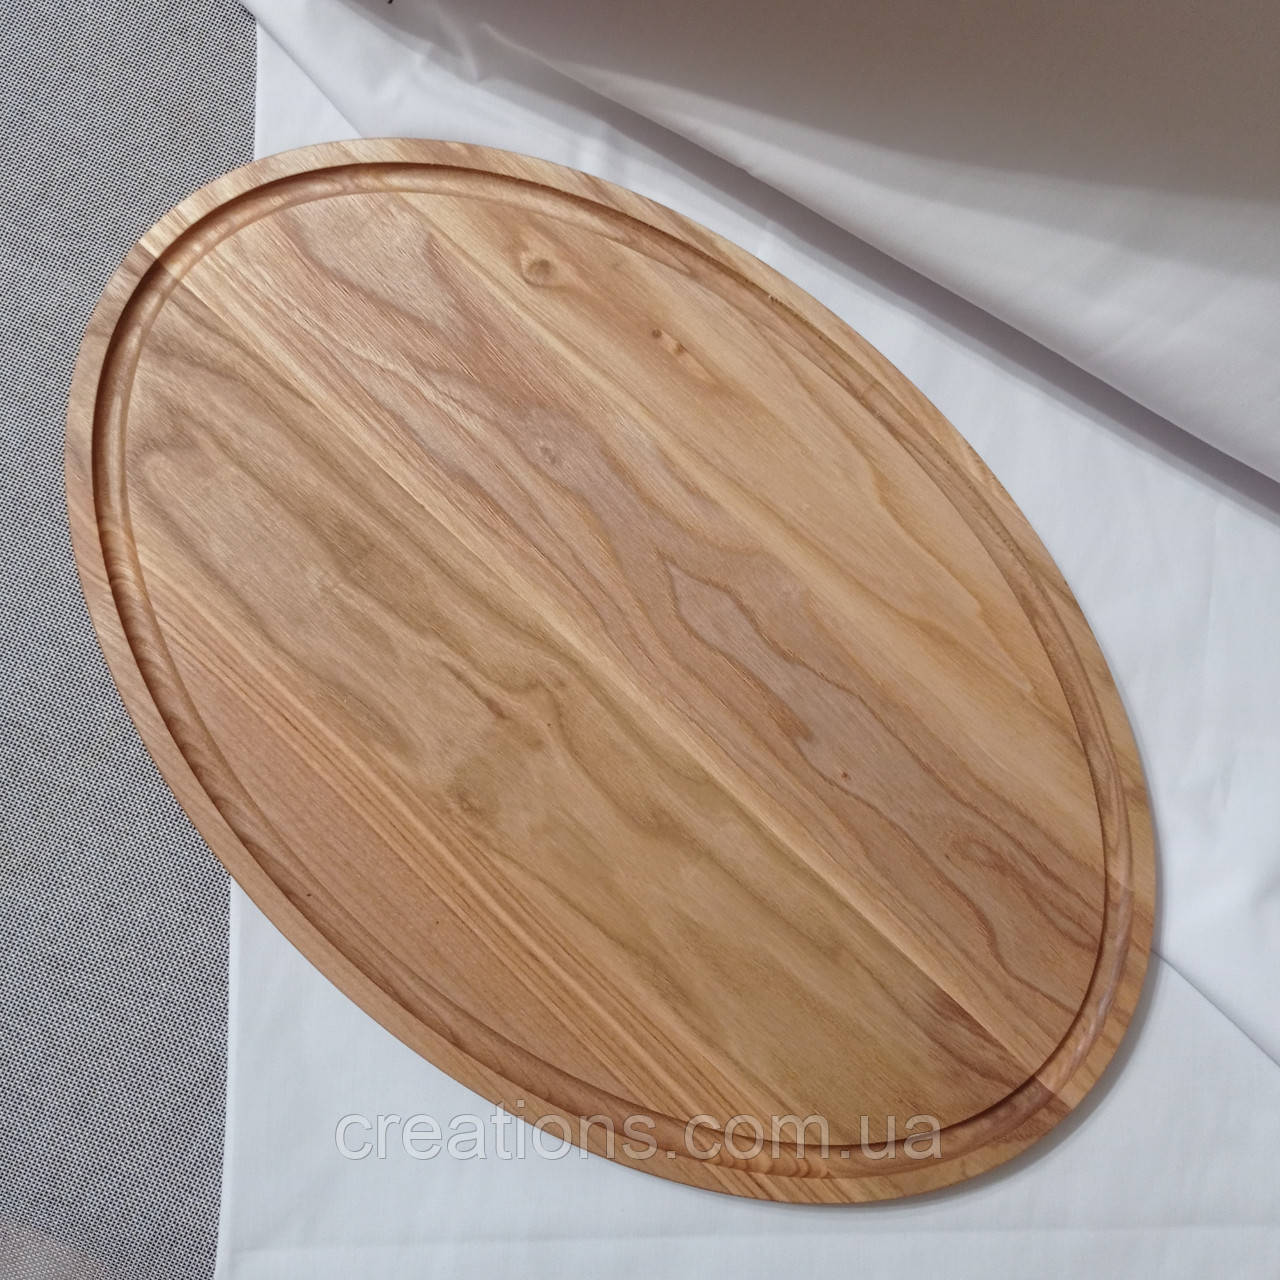 Дерев'яна кухонна дошка 45х30 см. професійна або дошка для подачі страв із ясеня